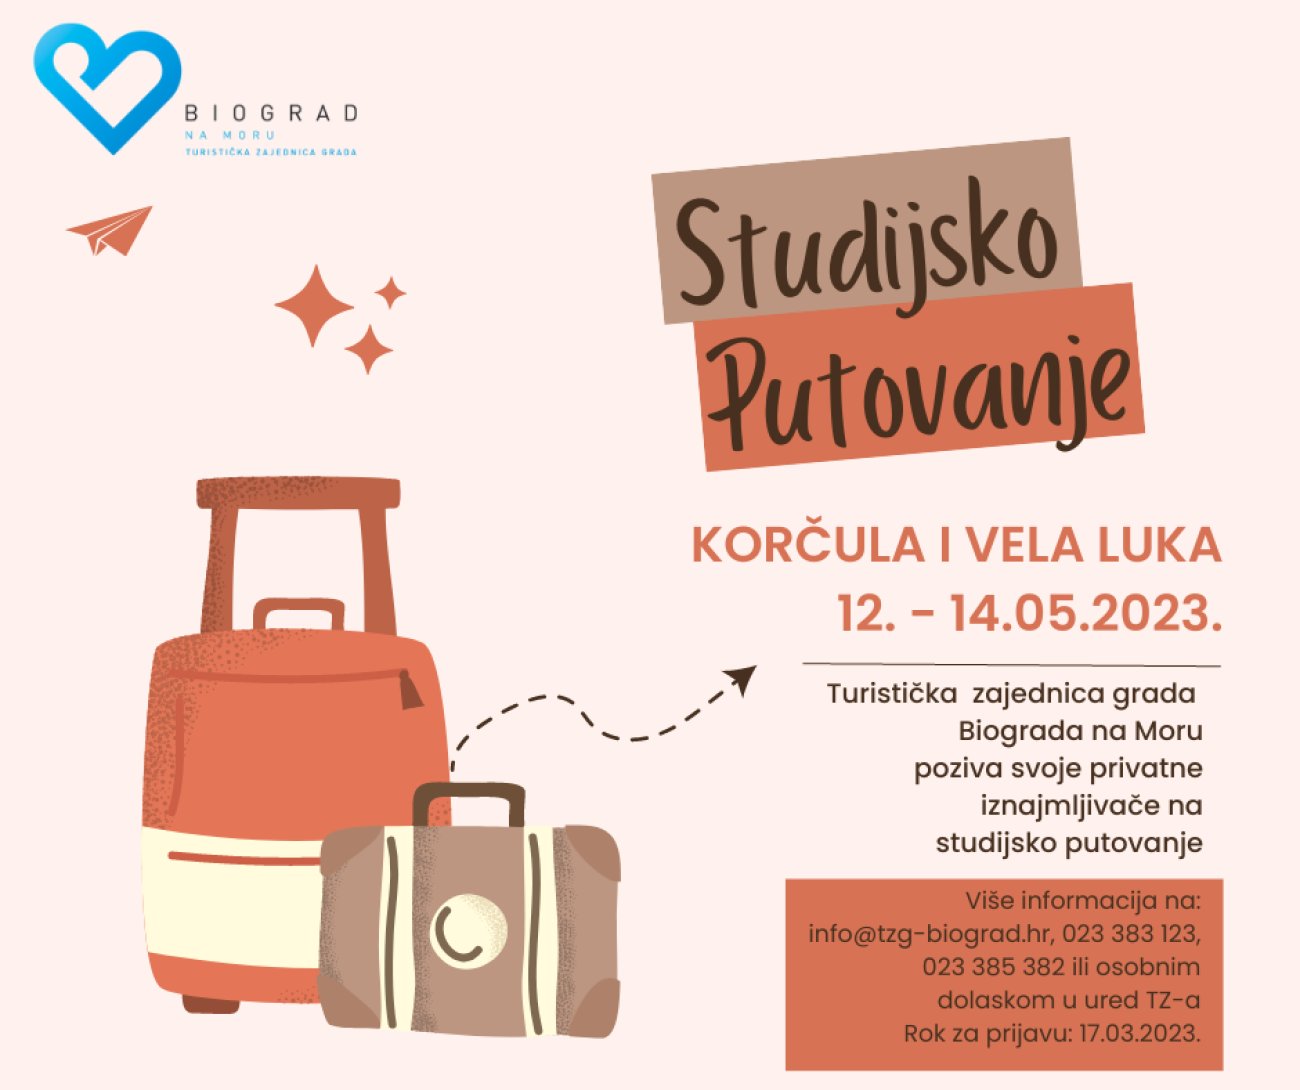 Studijsko putovanje - Korčula i Vela Luka